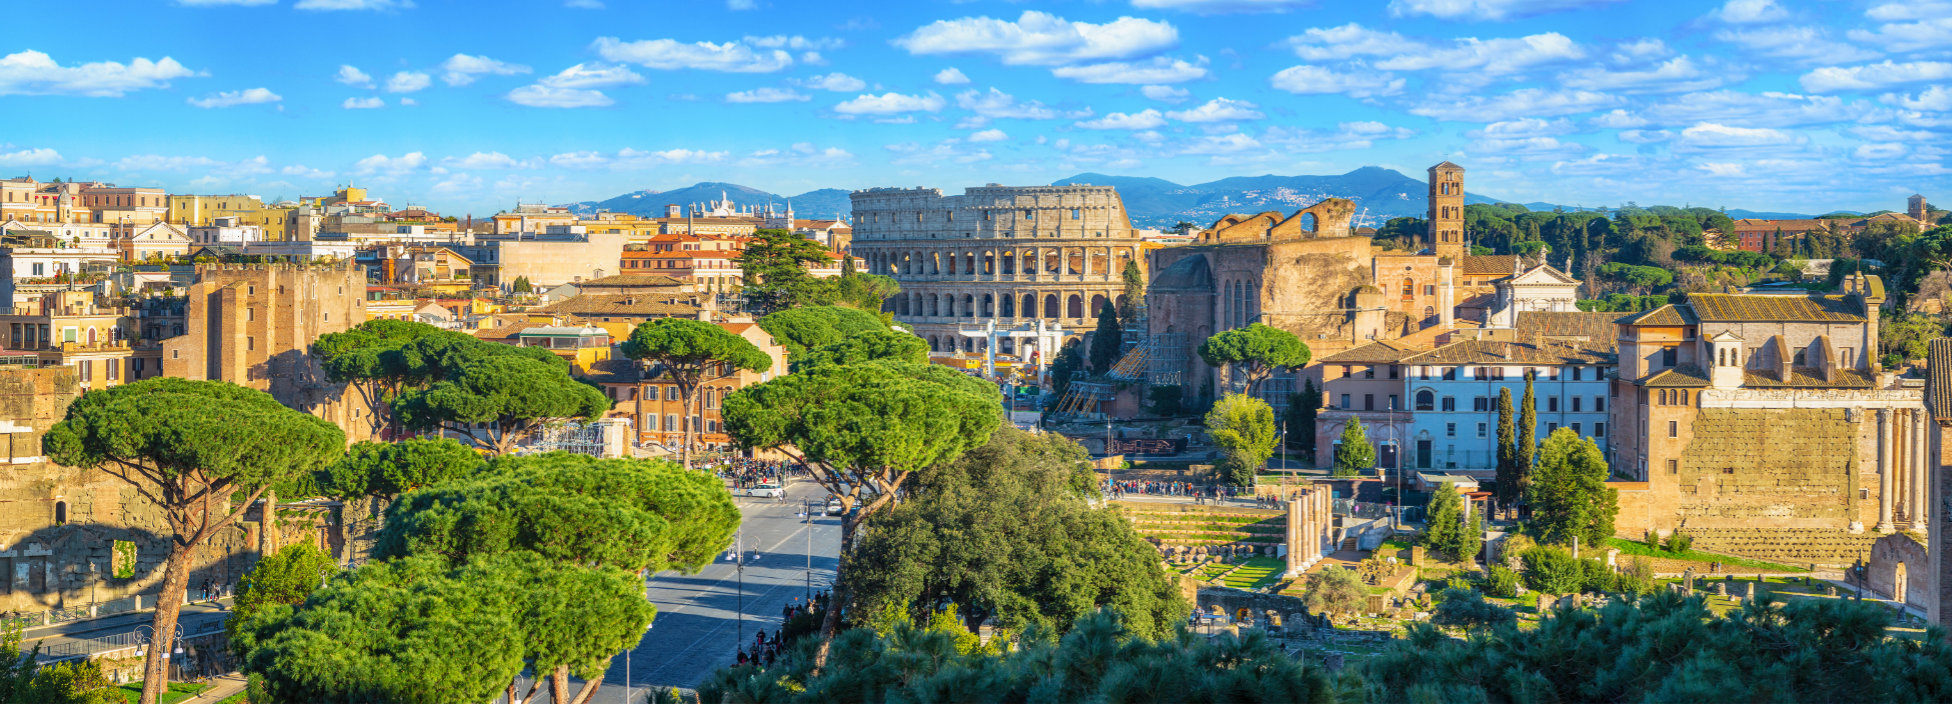 Panorama de Rome avec le Colisée